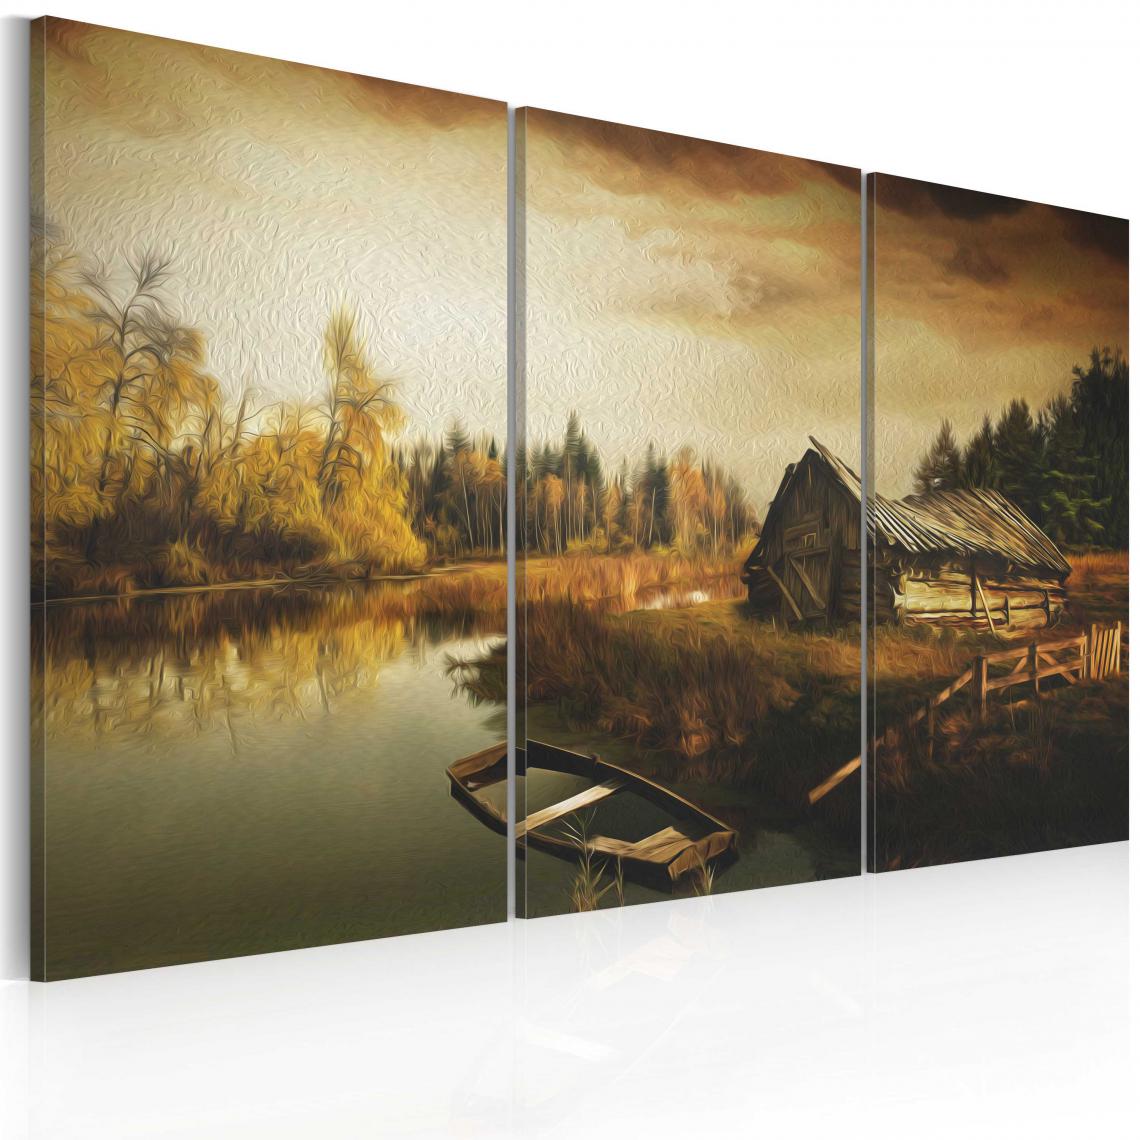 Decoshop26 - Tableau sur toile en 3 panneaux décoration murale image imprimée cadre en bois à suspendre Village idyllique - triptyque 120x80 cm 11_0007167 - Tableaux, peintures